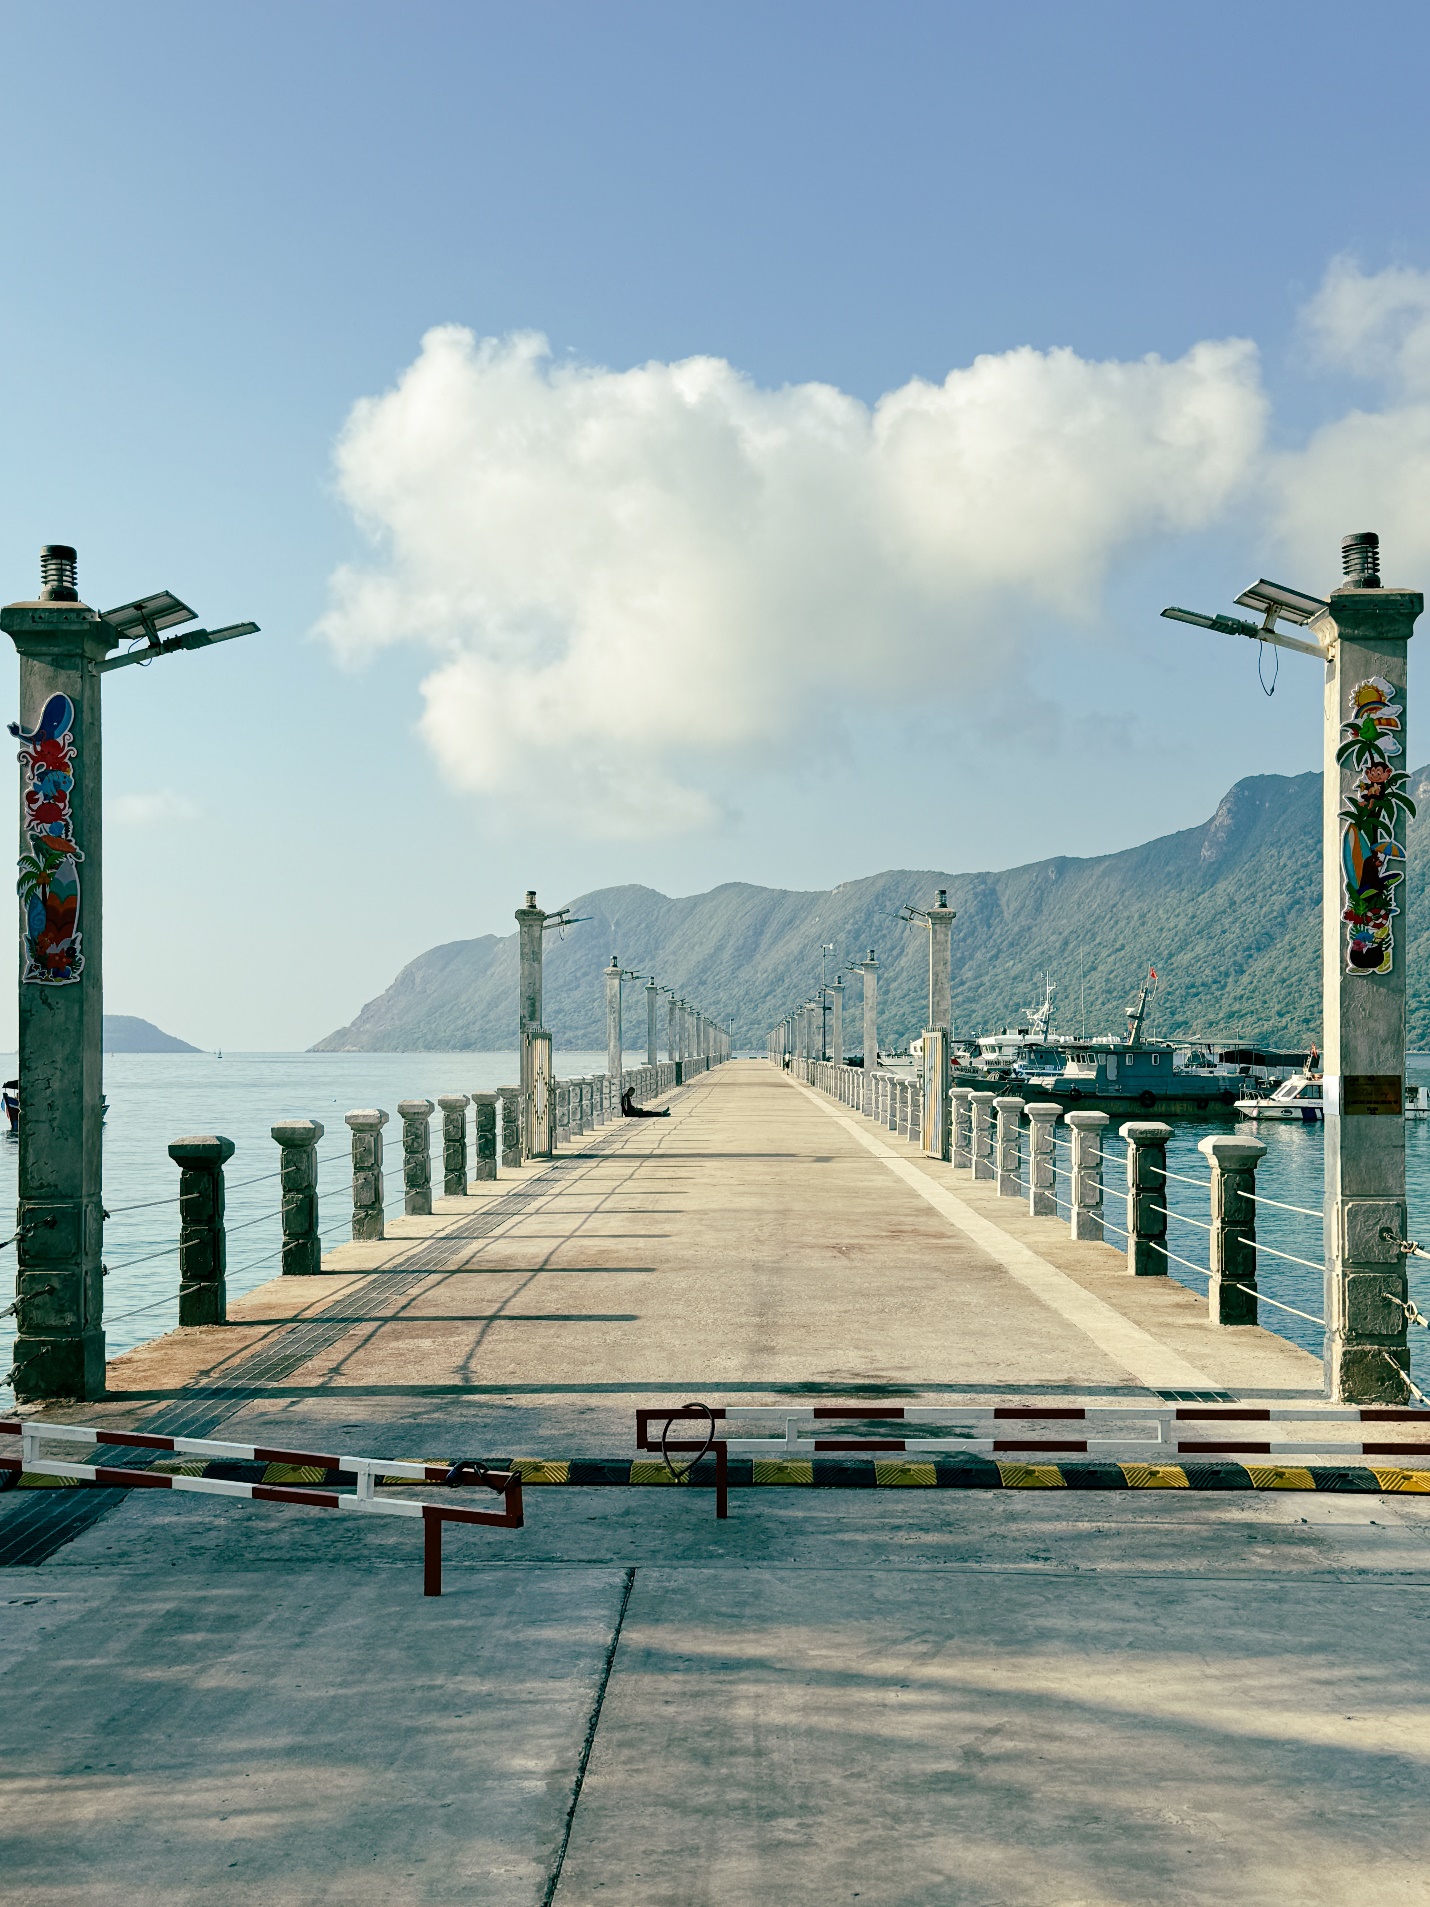 Dừng chân ở Côn Đảo, du khách ‘mê’ cách làm du lịch xanh - sạch - bền vững - 4